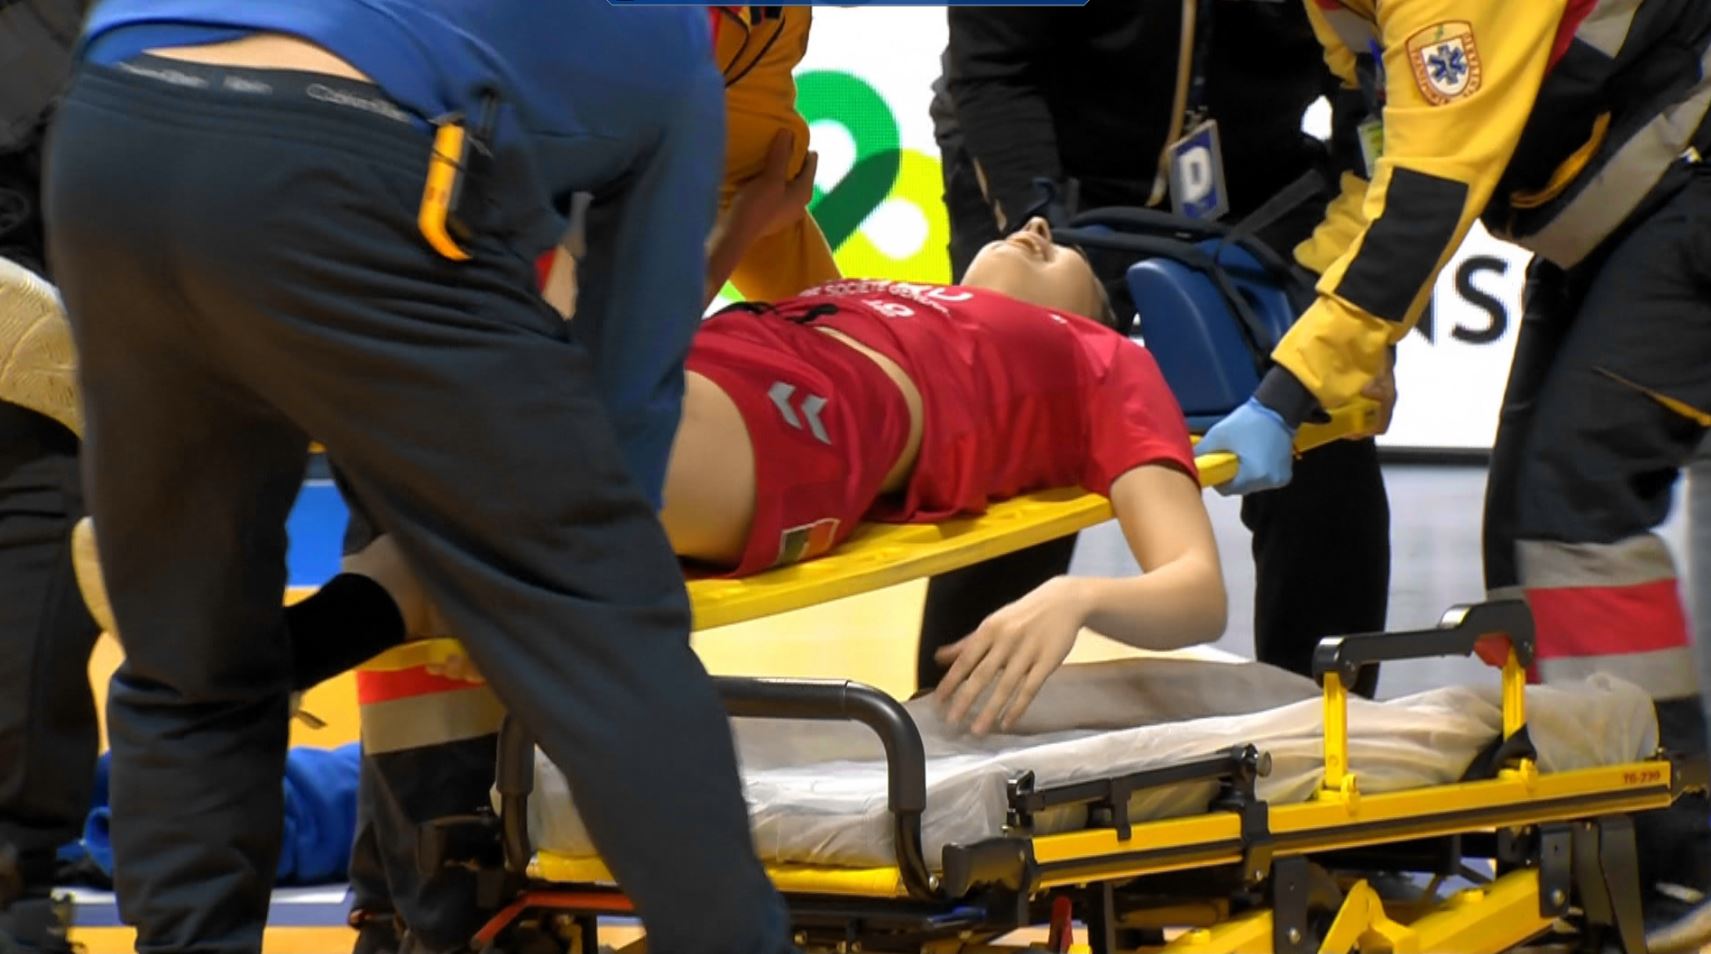 Adi Vasile, bulversat după accidentarea gravă a Oanei Borș, la debutul la Campionatul Mondial, exact la primul ei gol